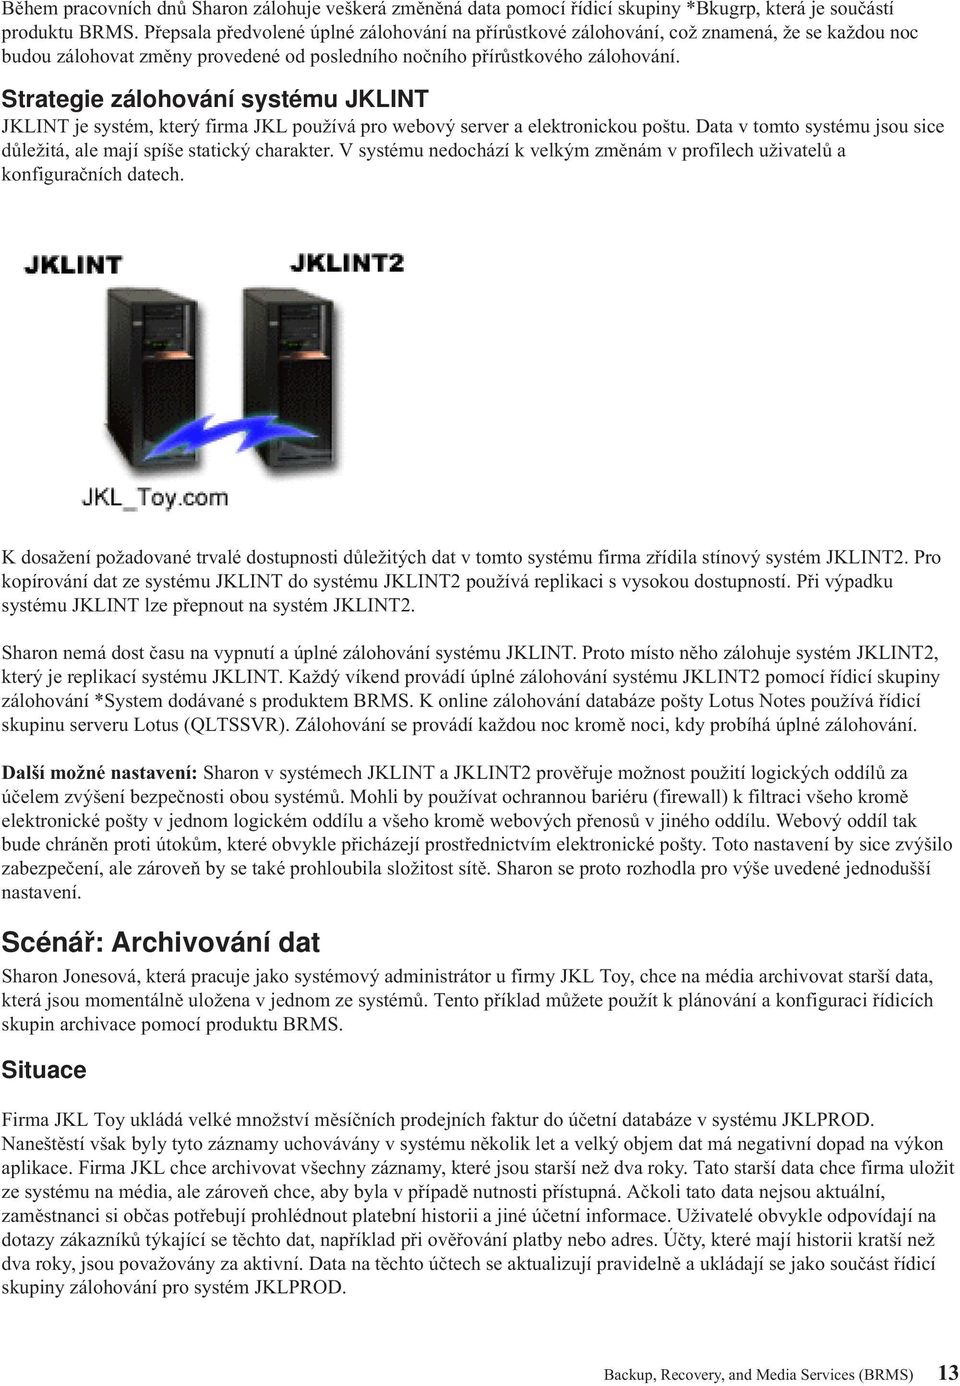 Strategie zálohování systému JKLINT JKLINT je systém, který firma JKL používá pro webový server a elektronickou poštu. Data v tomto systému jsou sice důležitá, ale mají spíše statický charakter.